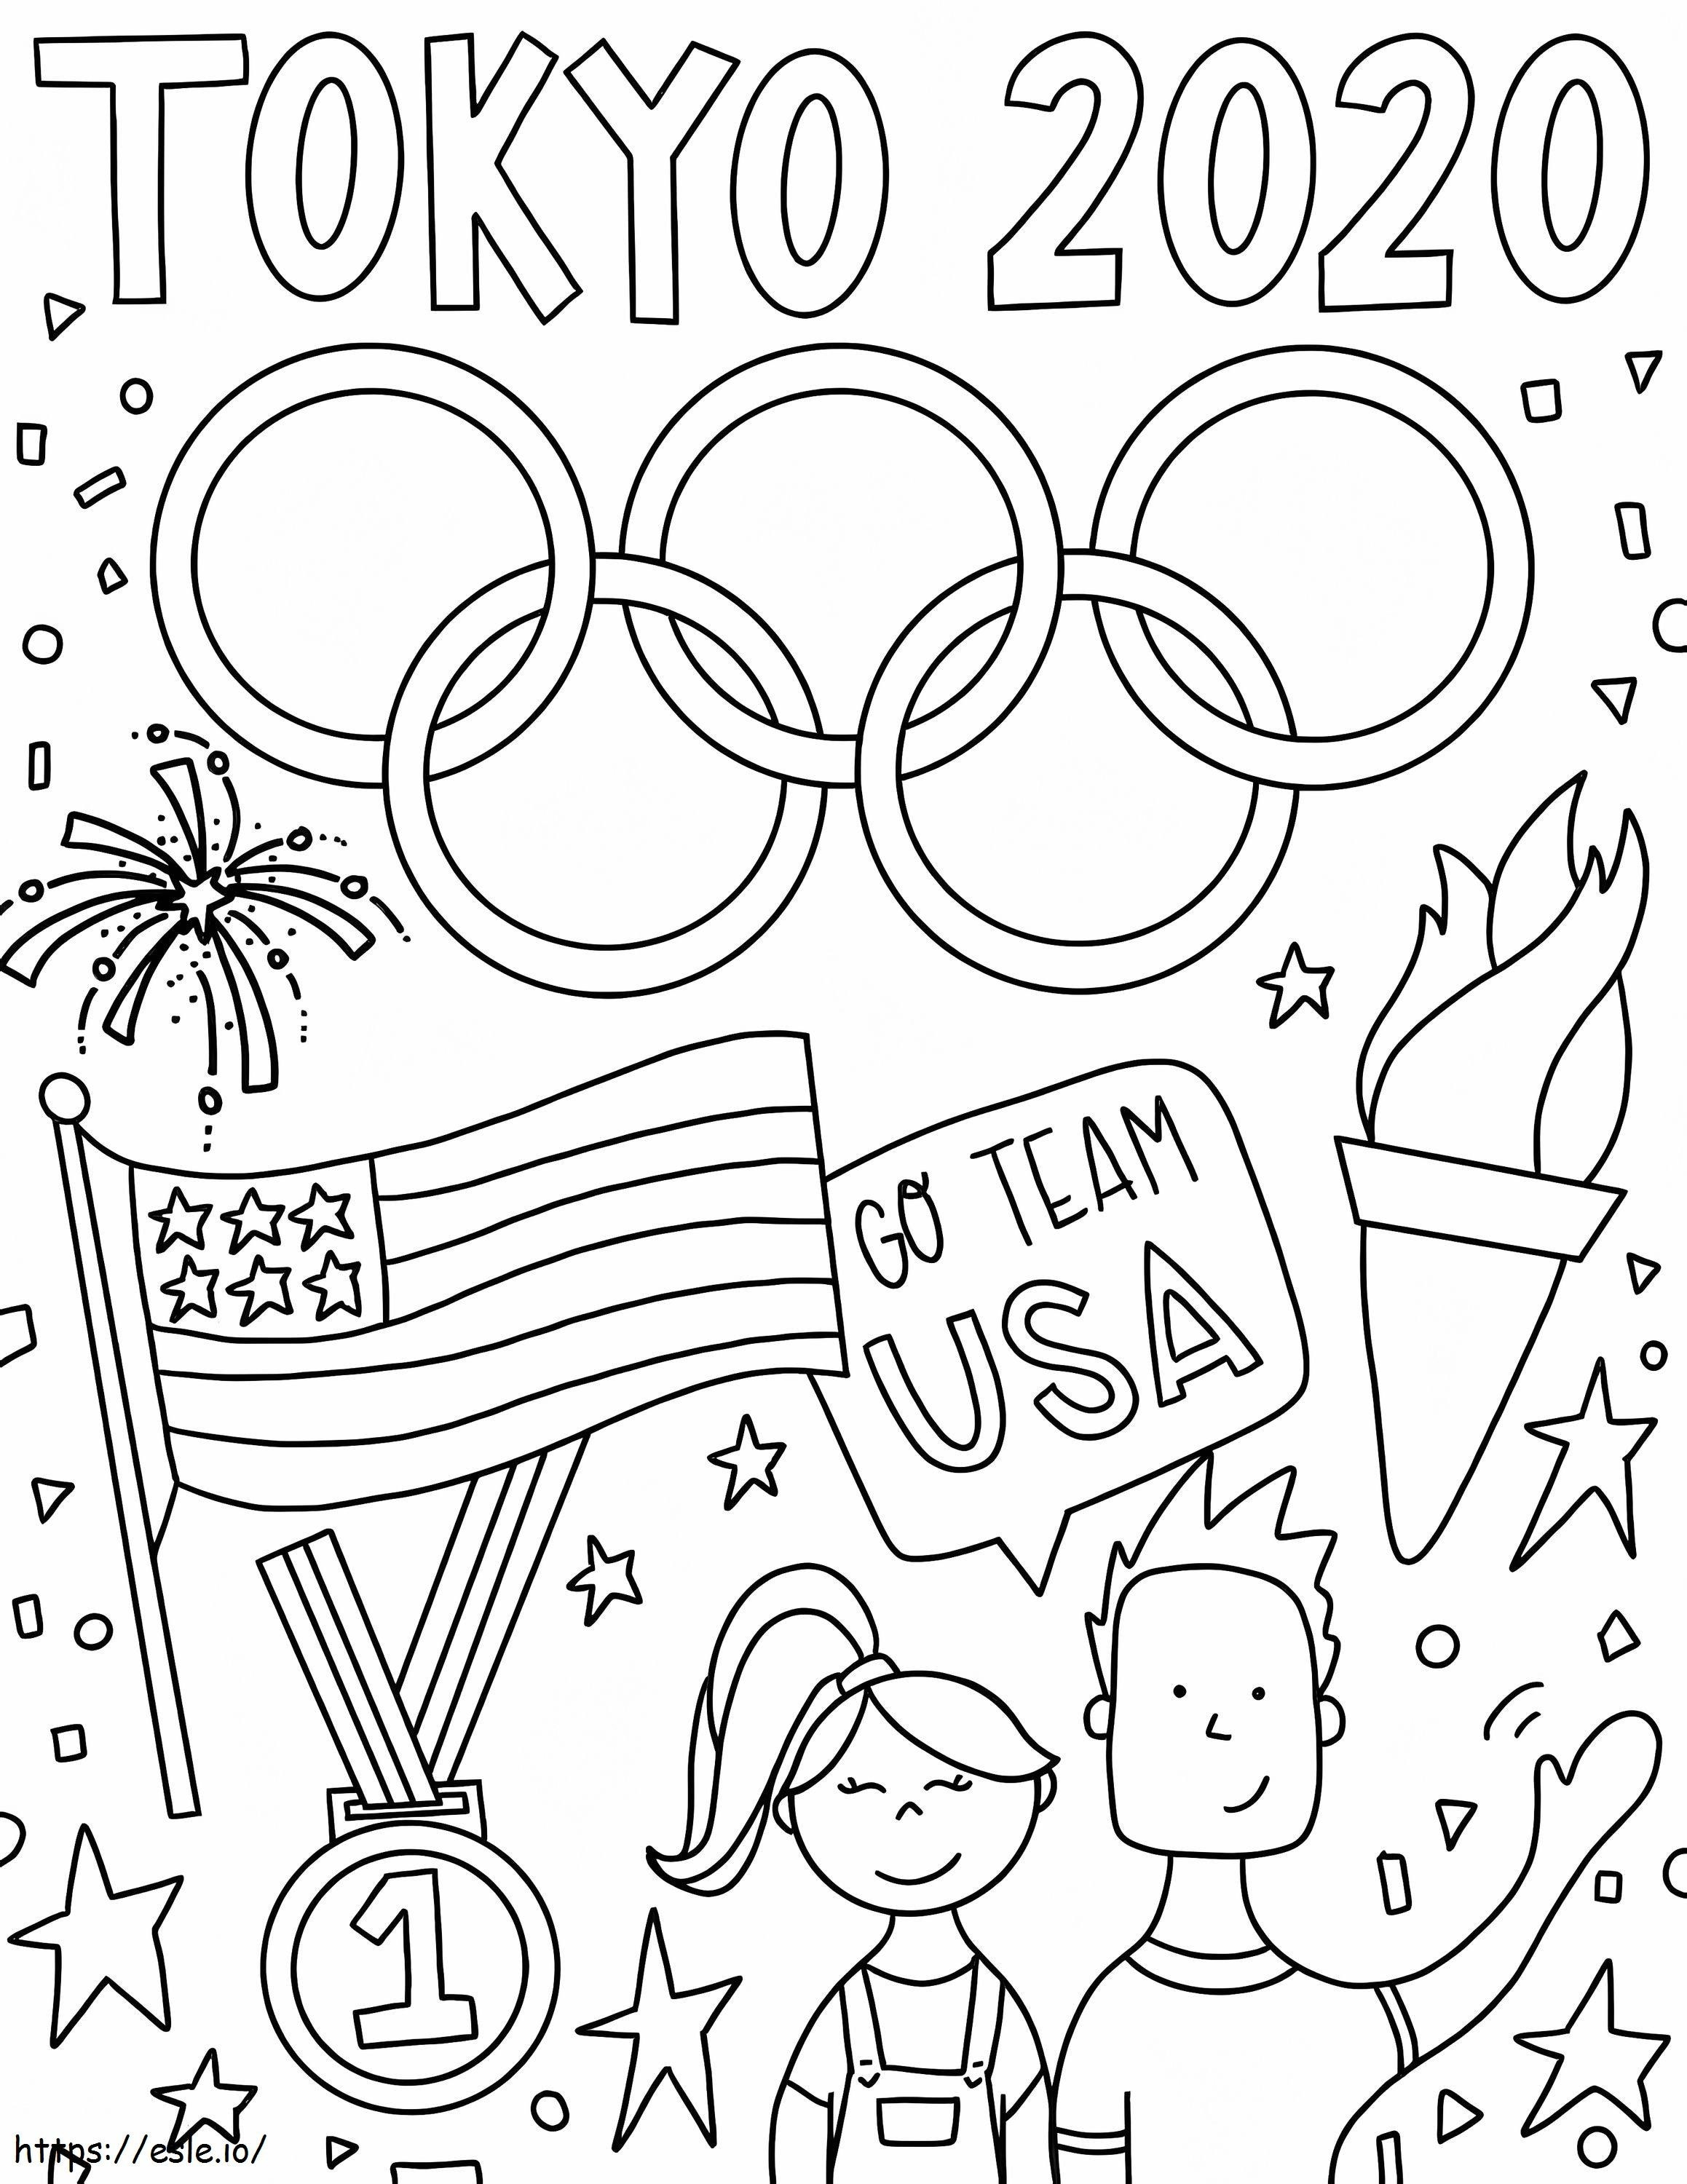 Olympische Spelen Tokio 2020 kleurplaat kleurplaat